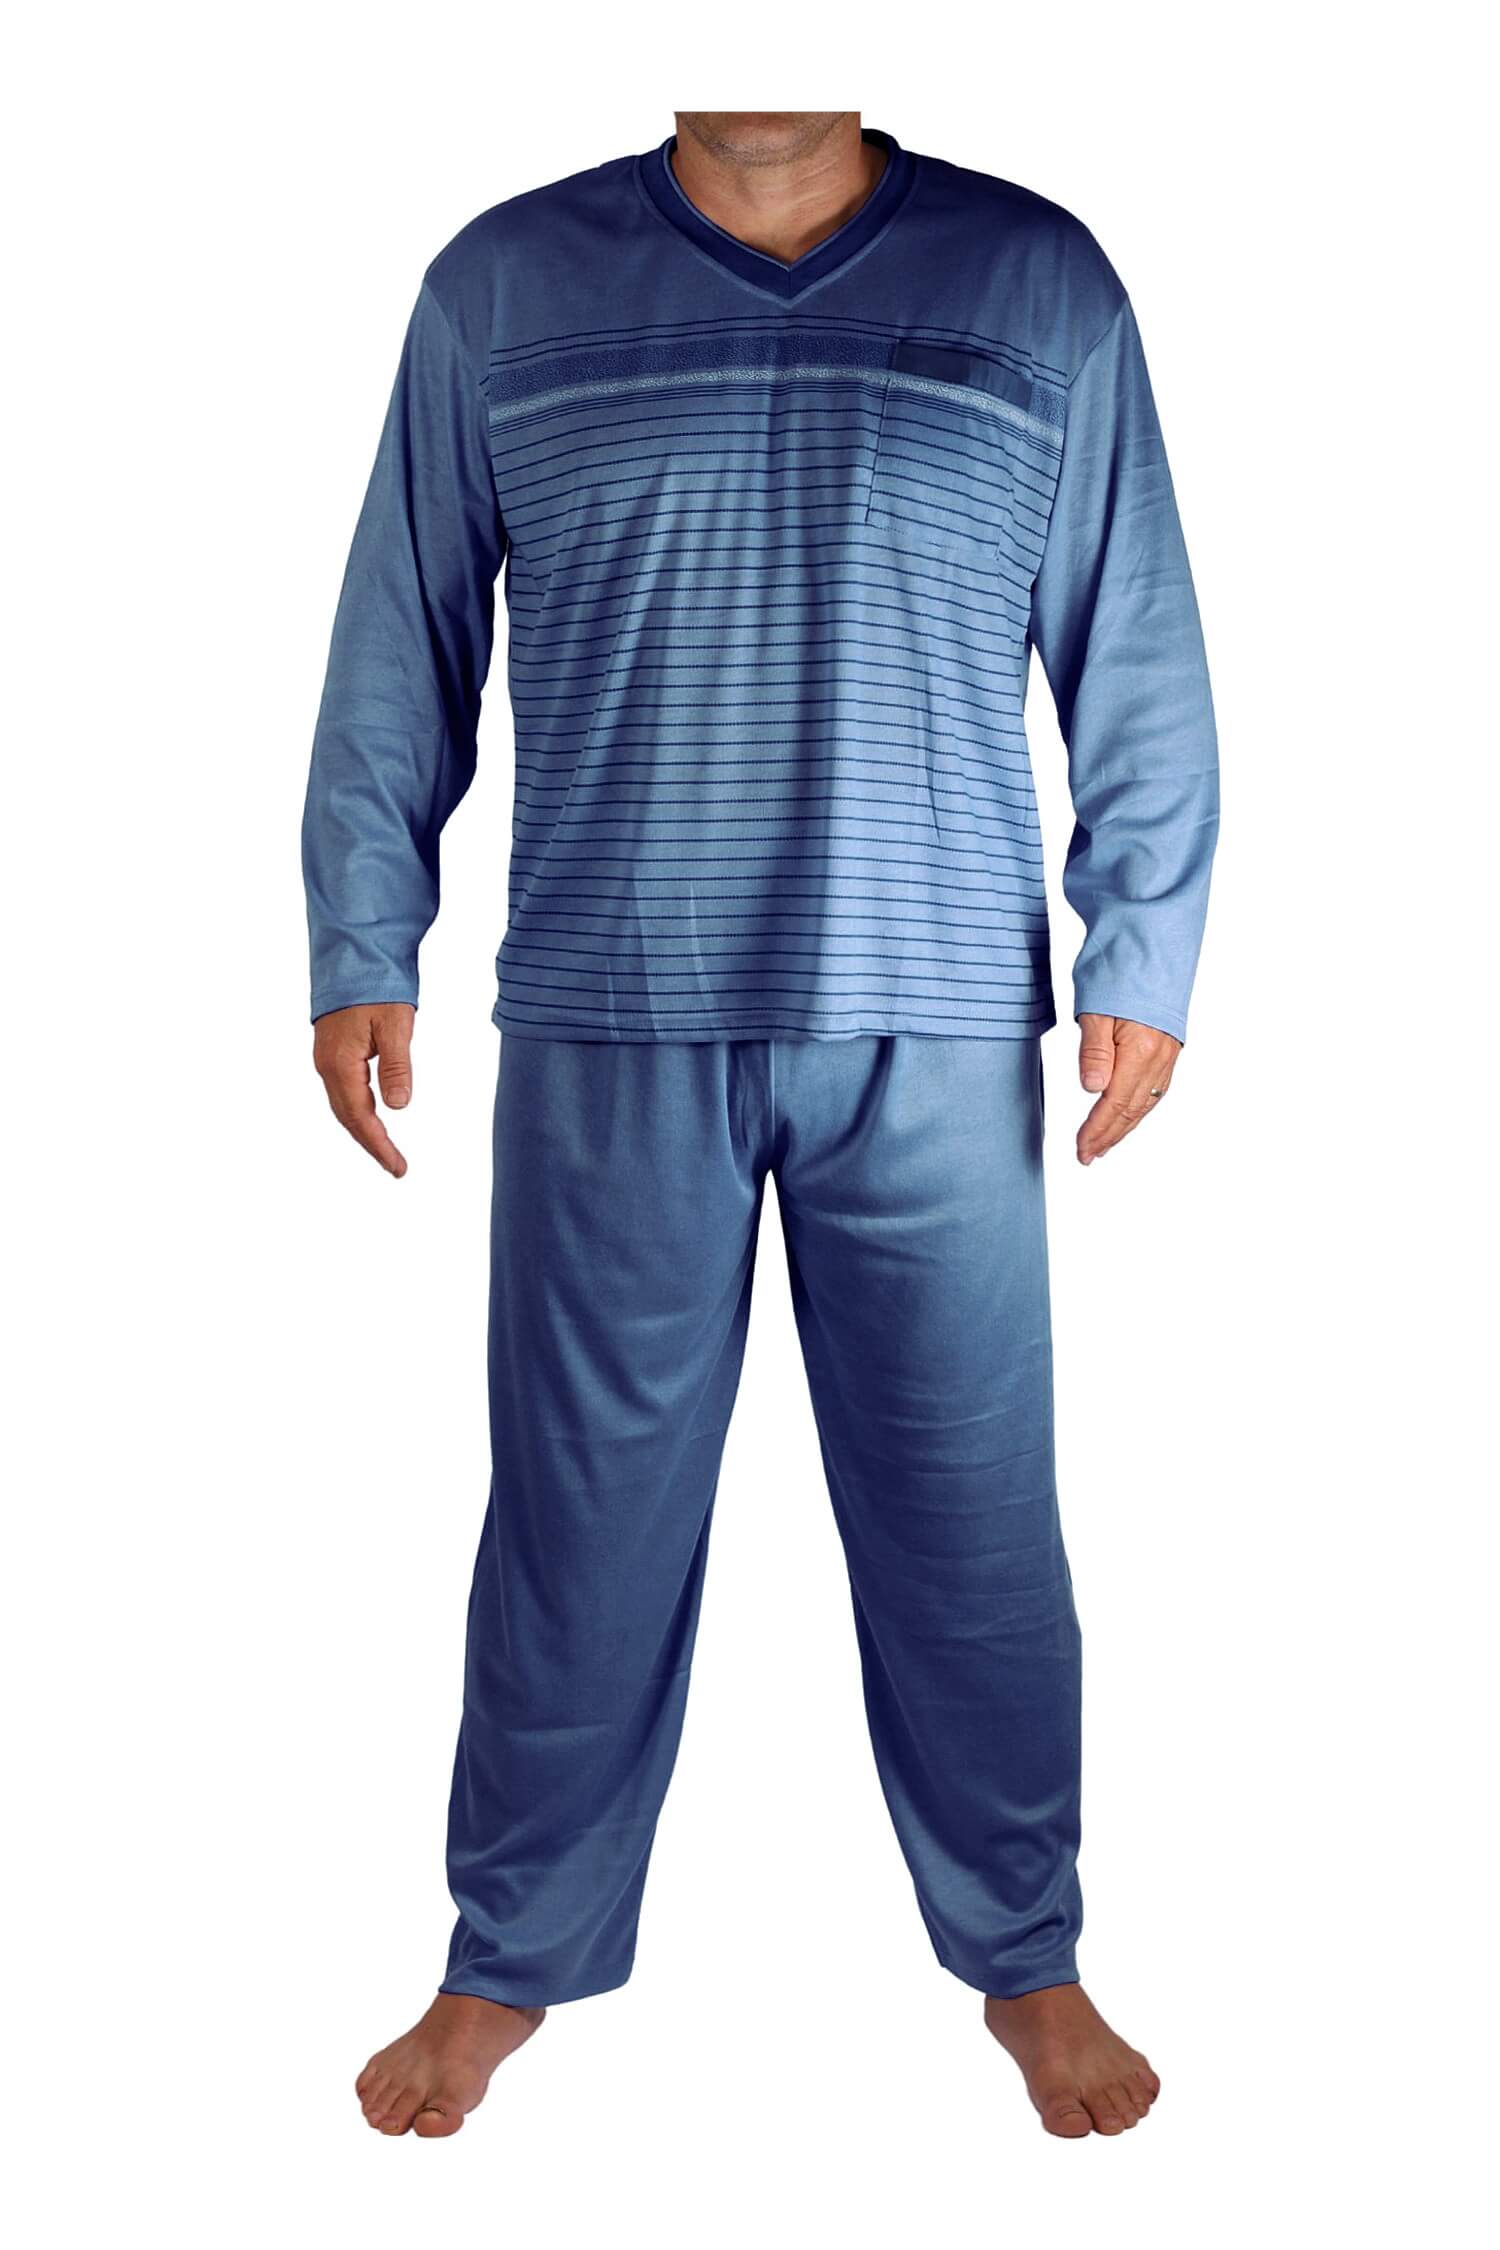 Standa pyžamo pánské dlouhé V2401 XXL šedomodrá